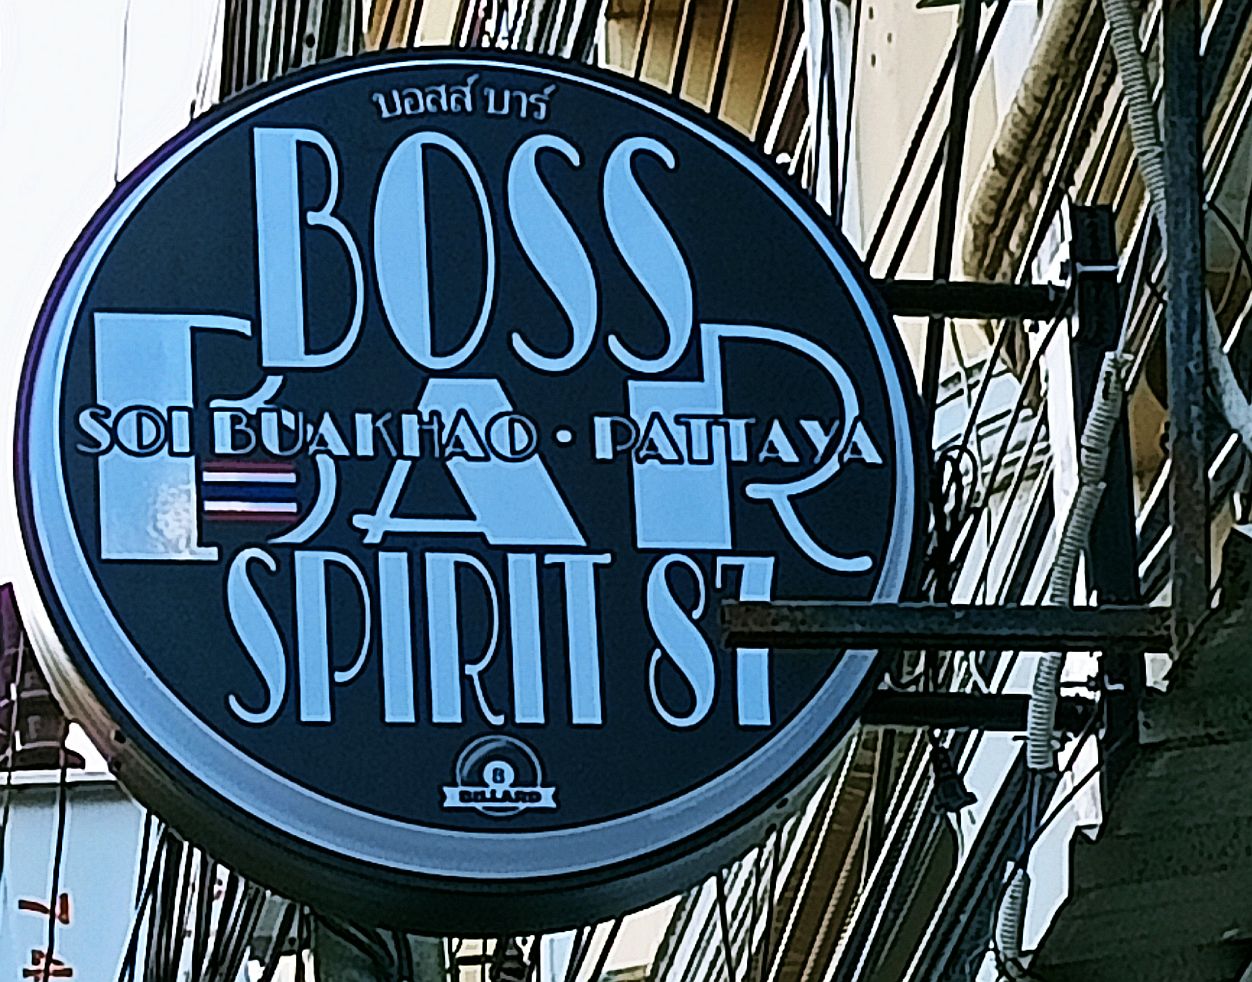 Boss Spirit 87 Soi Buakhao